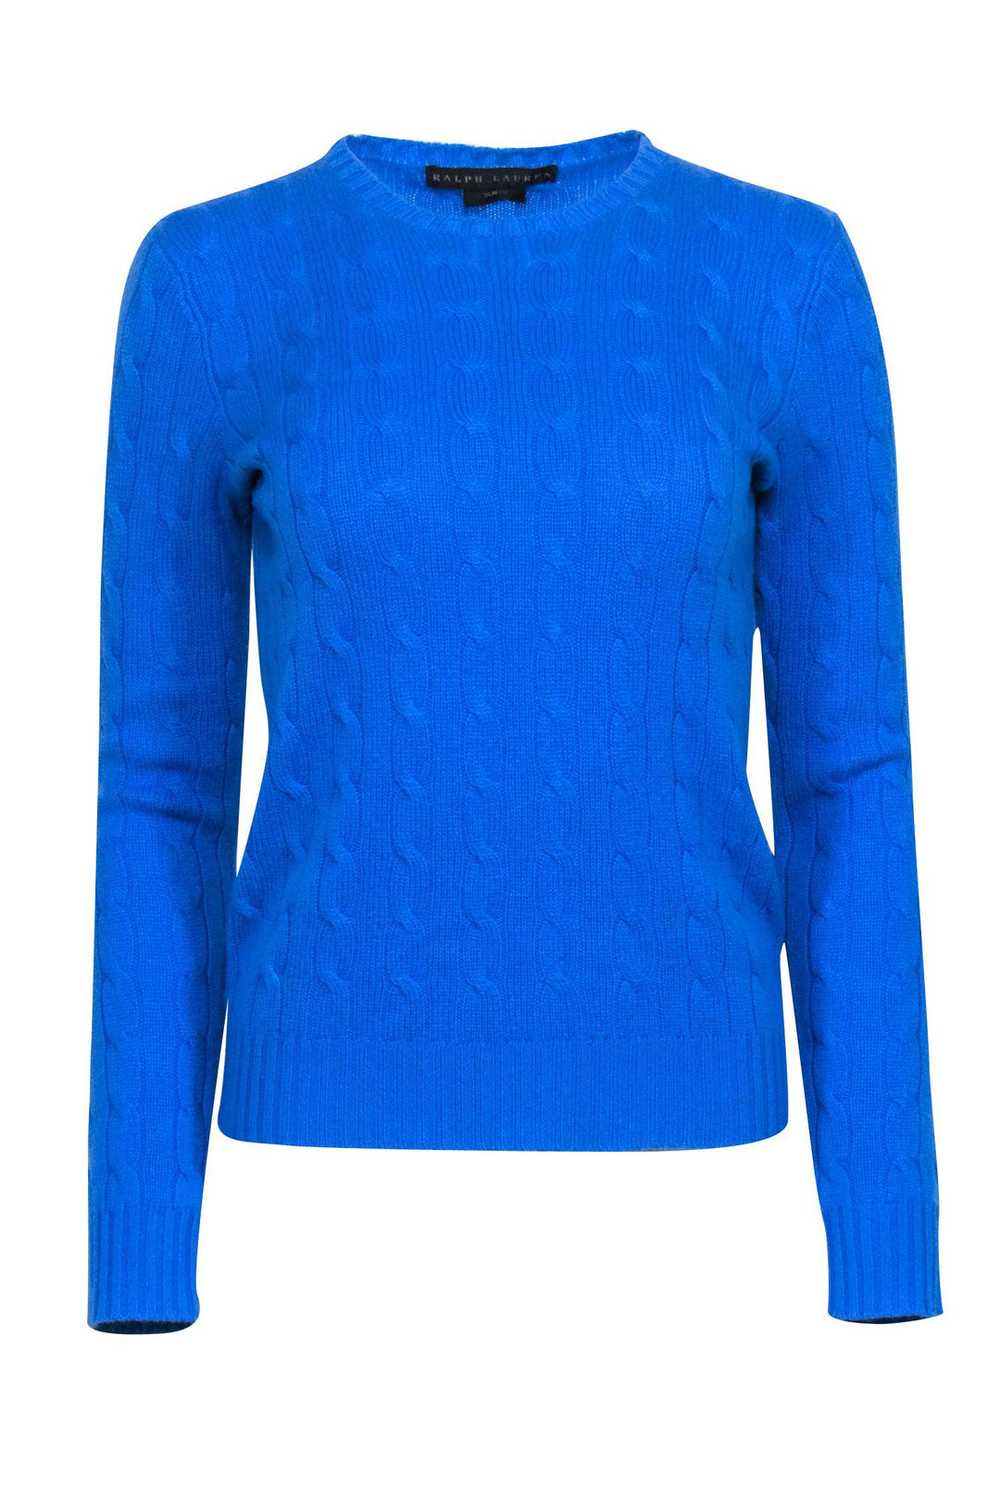 Ralph Lauren - Blue Cable Knit Sweater Sz S - image 1